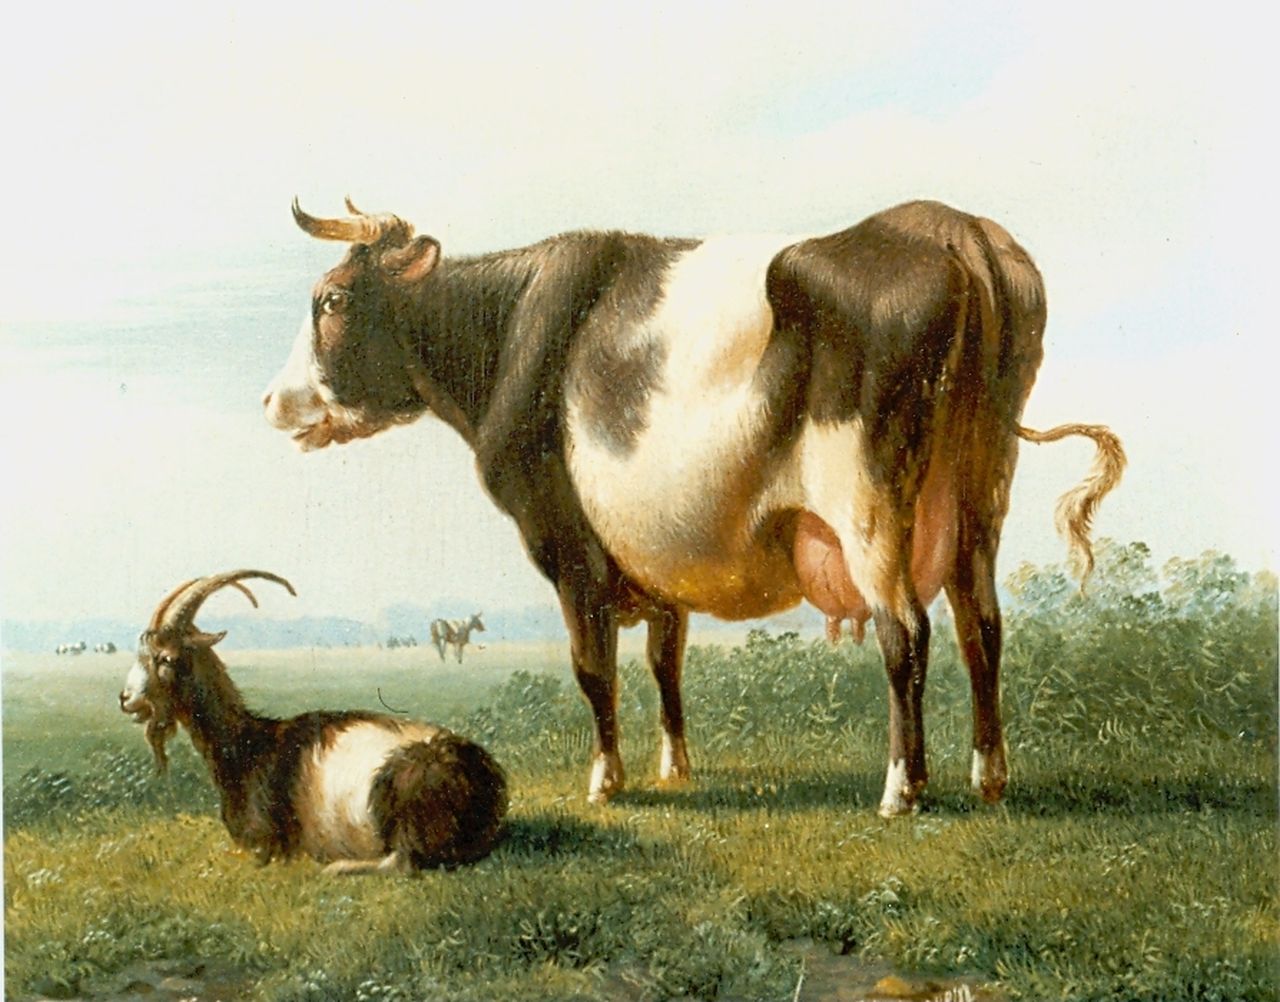 Verhoesen A.  | Albertus Verhoesen, Koeien en bokje in de wei, olieverf op doek 14,3 x 16,5 cm, gesigneerd rechtsonder